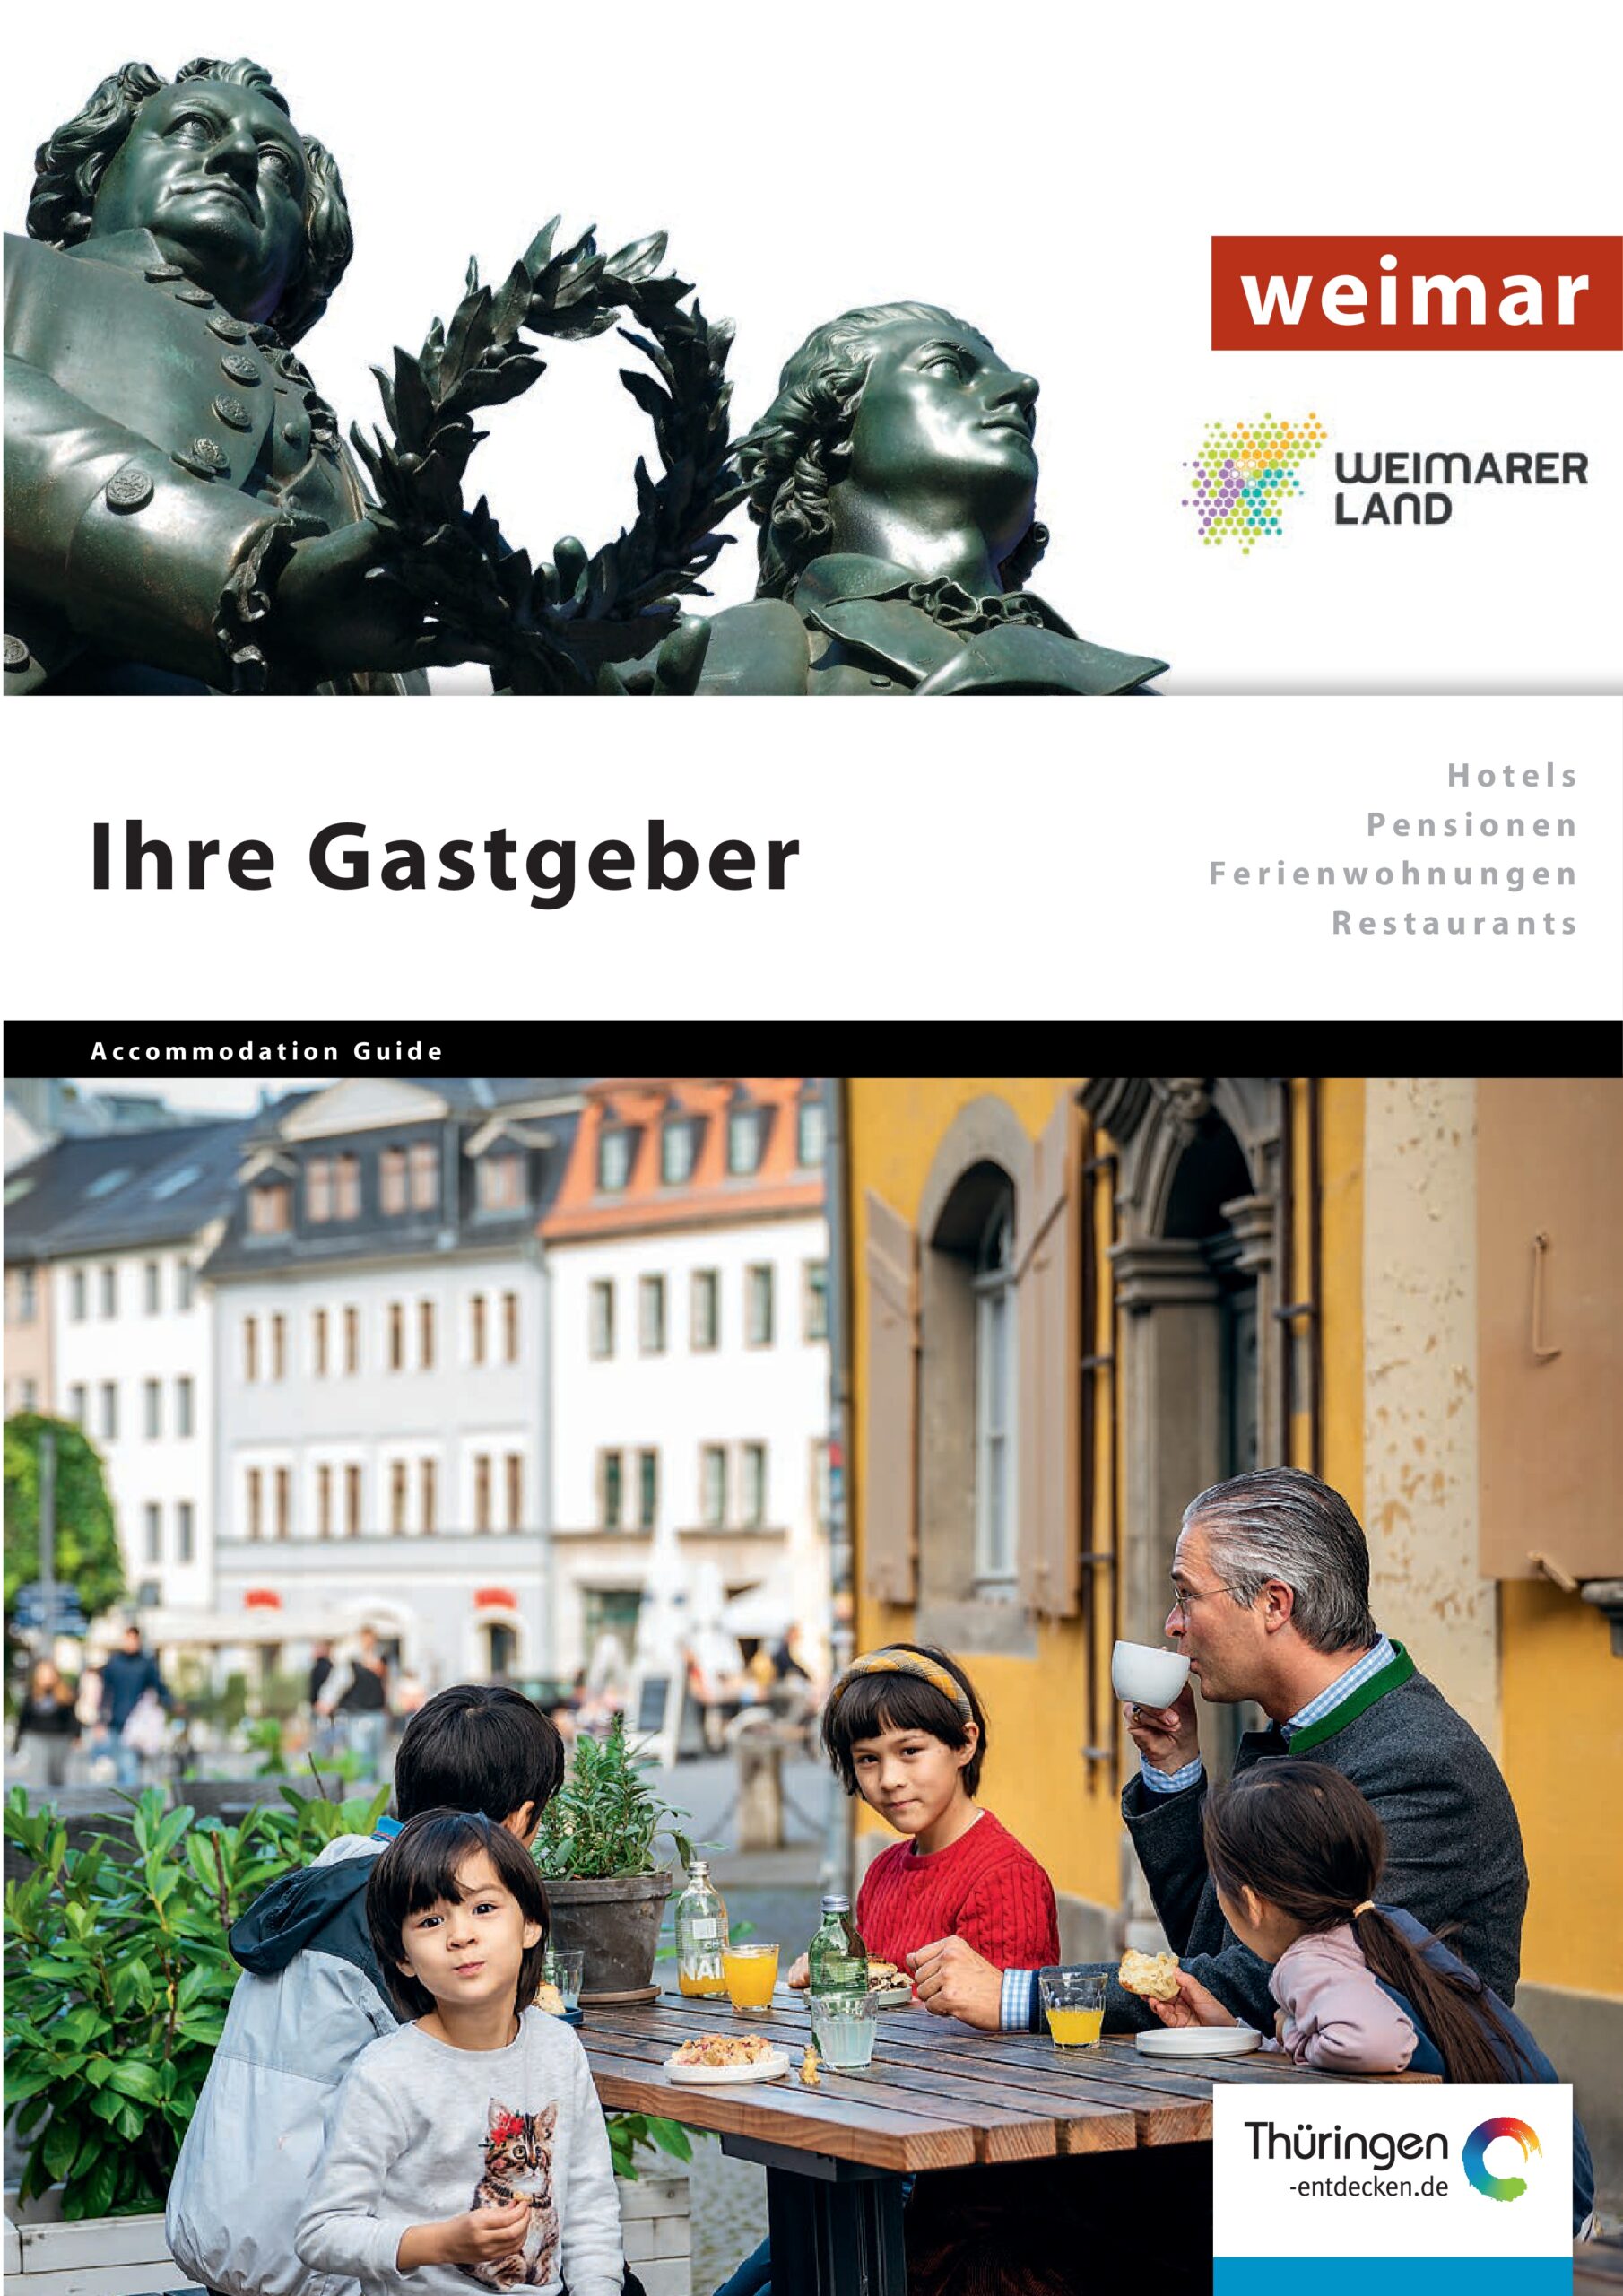 Vorschaubild für den Gastgeber Katalog "Gastgeber in Weimar und Weimarer Land